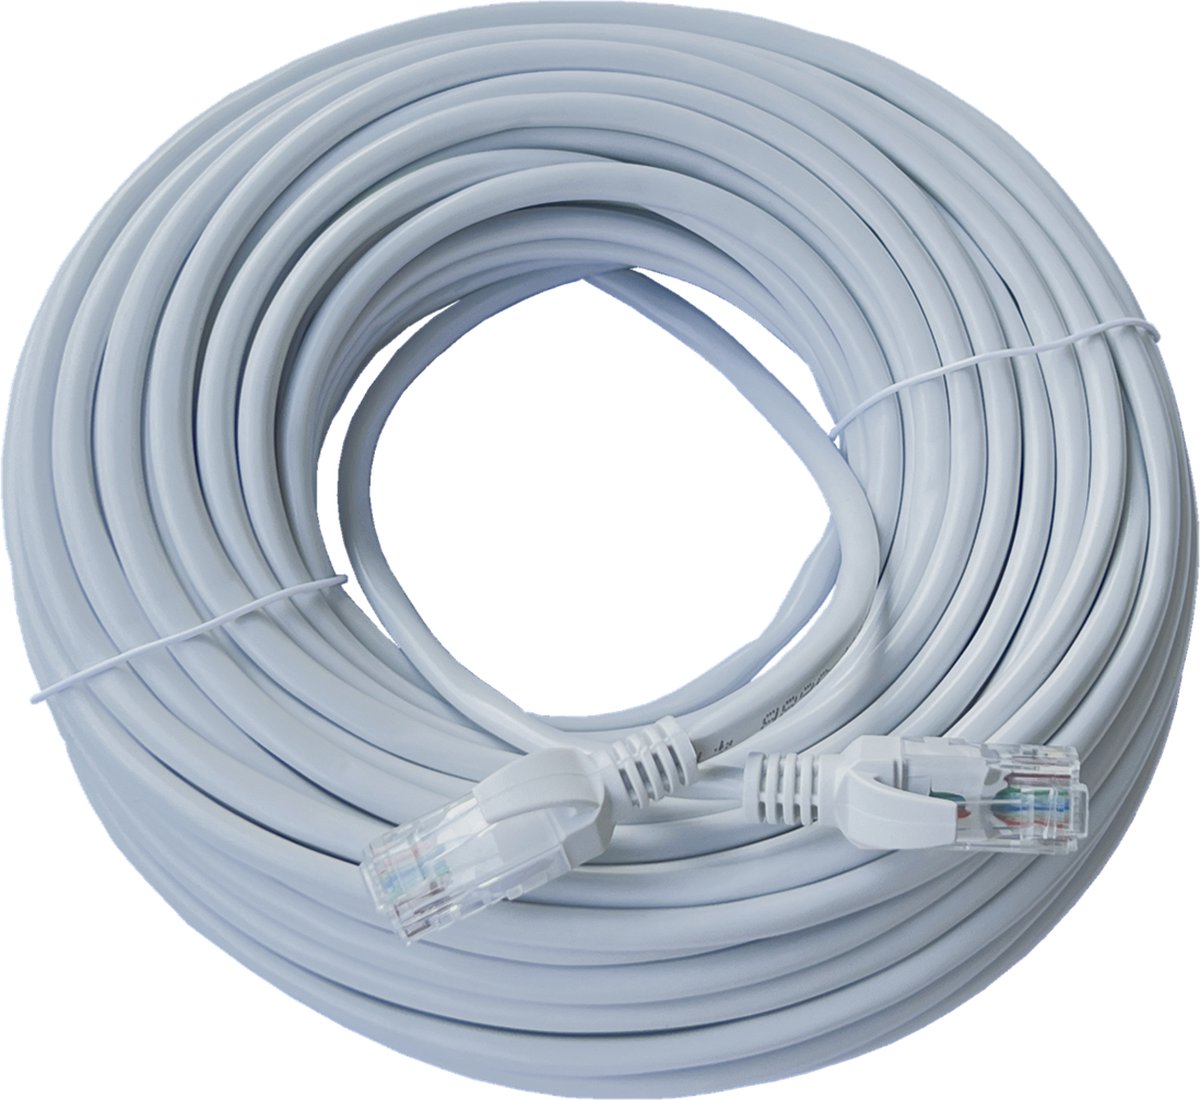 ValeDelucs Internetkabel 15 meter - CAT5e UTP Ethernet kabel RJ45 - Patchkabel LAN Netwerkkabel - Grijs - ValeDelucs